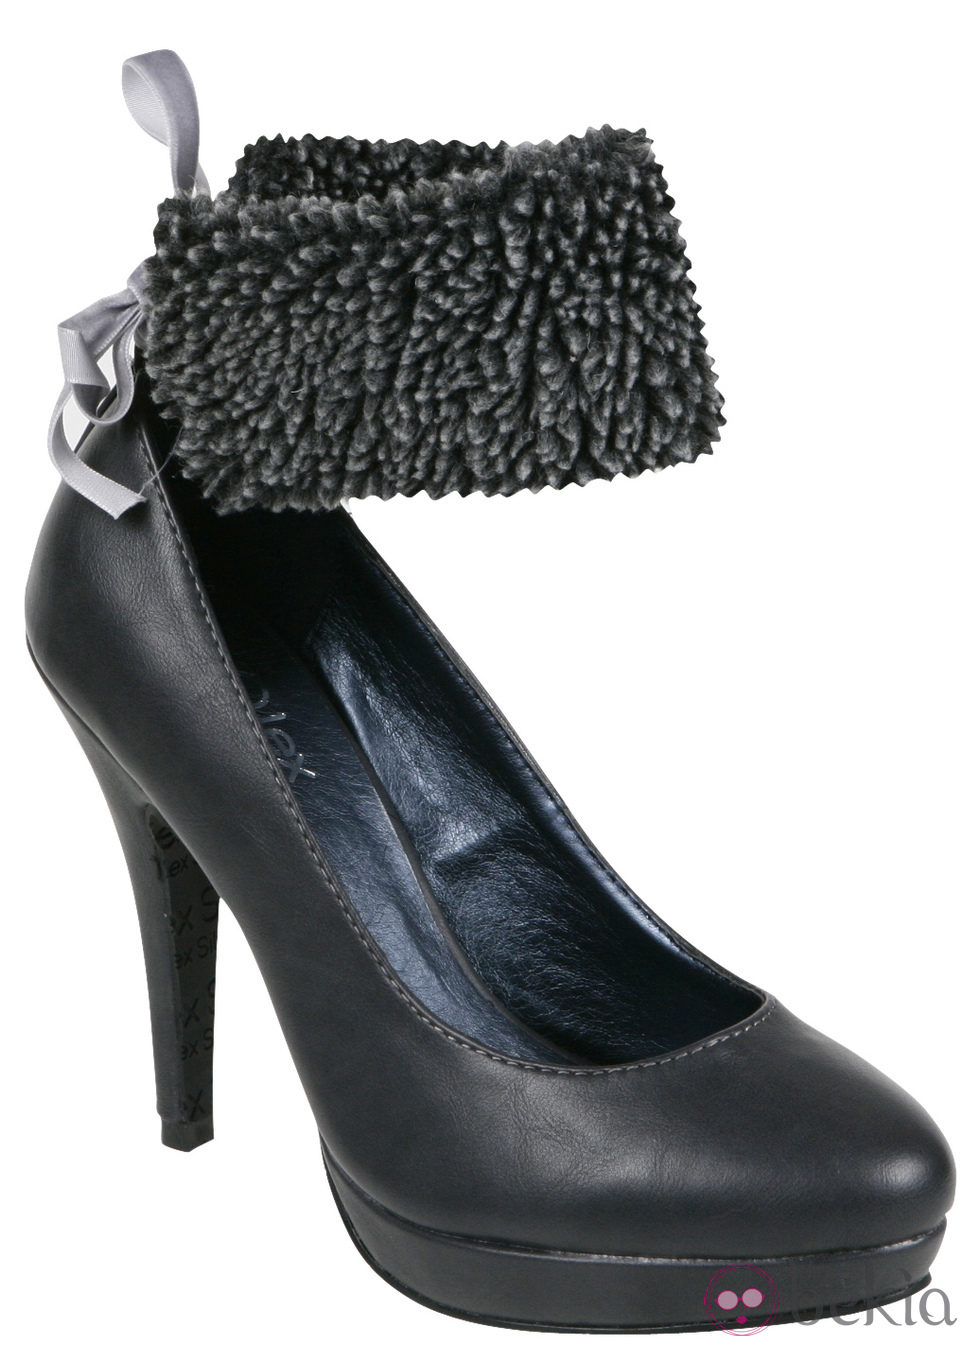 Zapato de salón gris con pulsera de borrego de la colección otoño/invierno 2011/2012 de Alex Silva